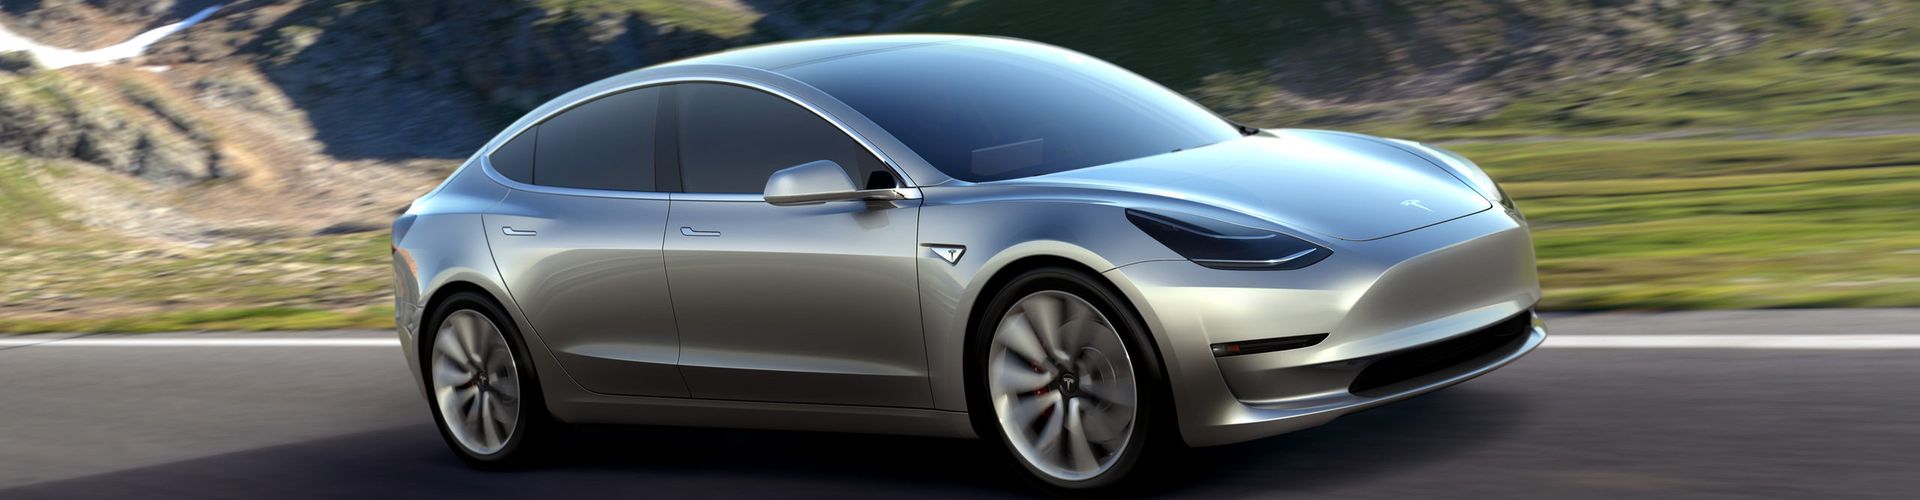 Tesla Model 3 samochód po który ustawiają się kolejki